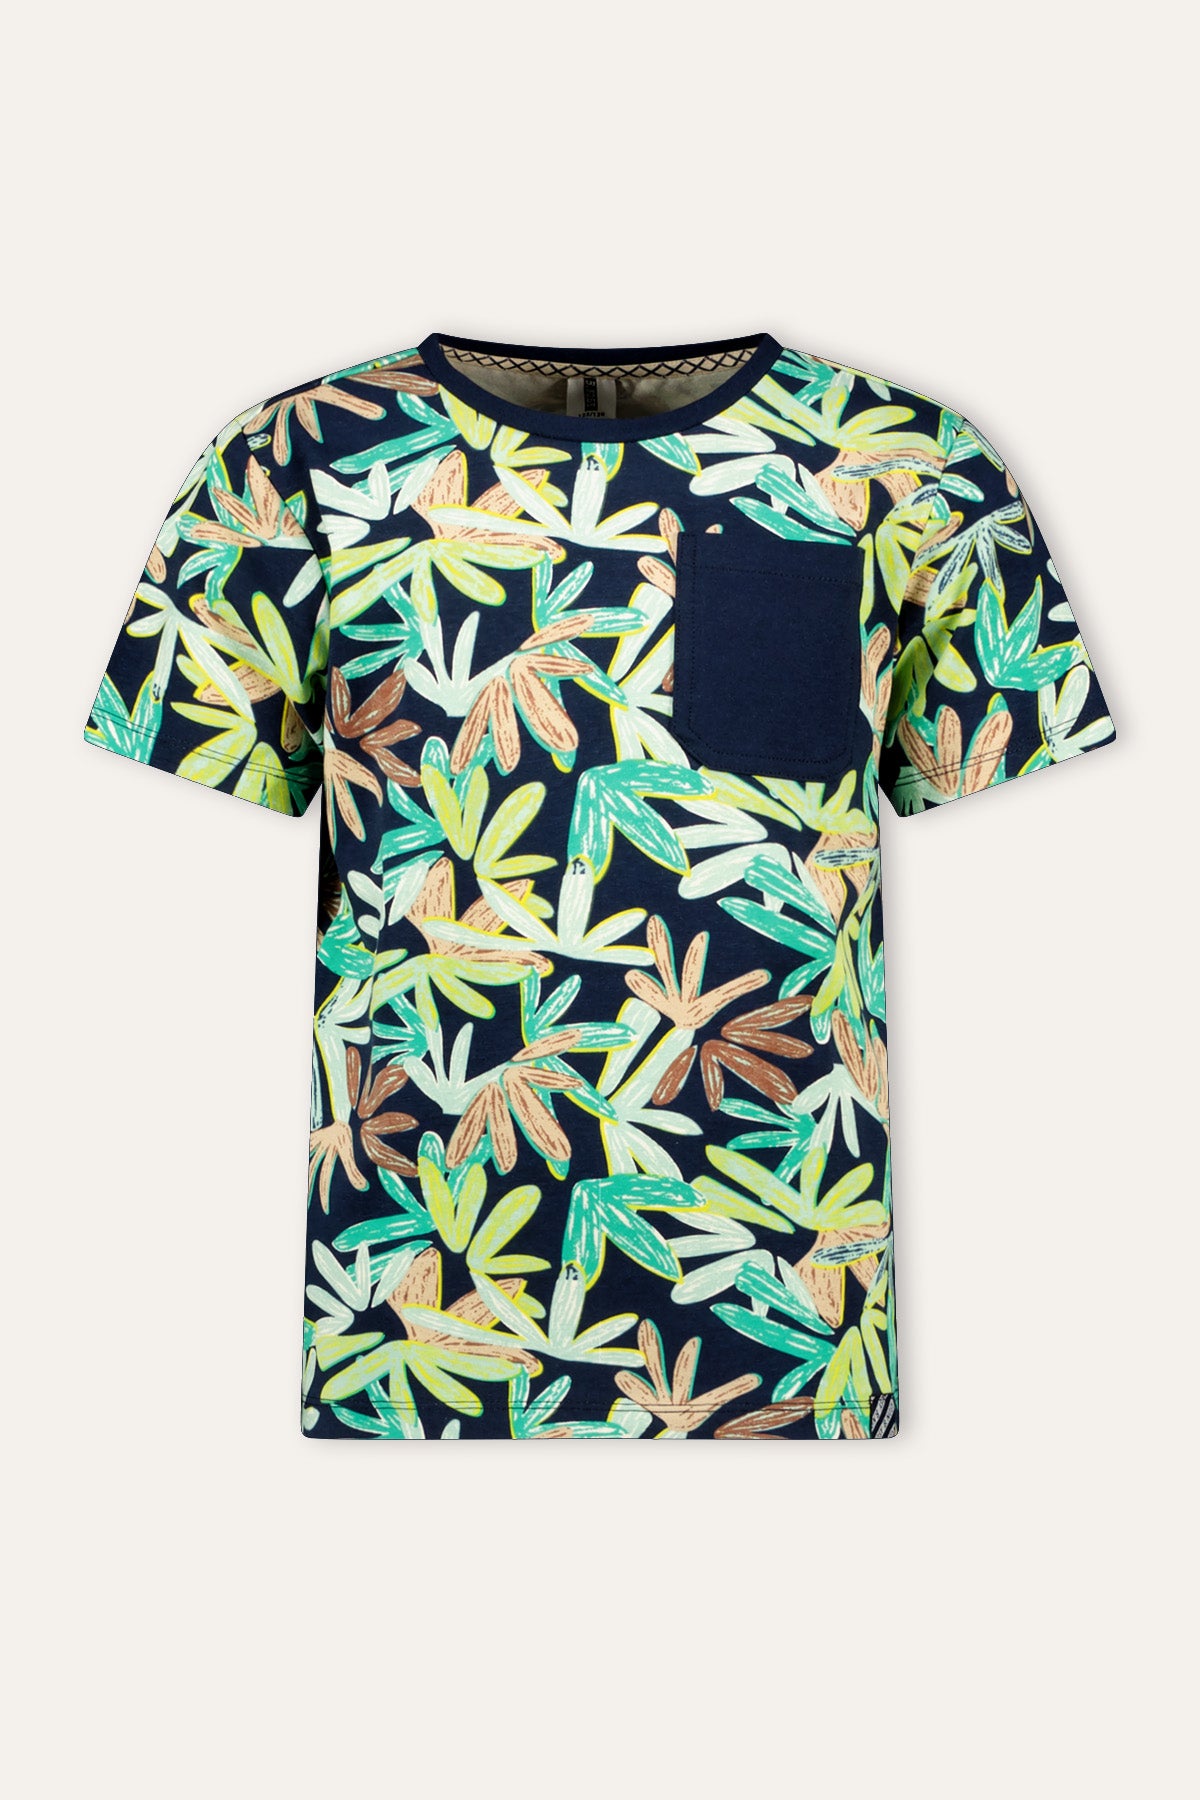 MASON t-shirt tropical